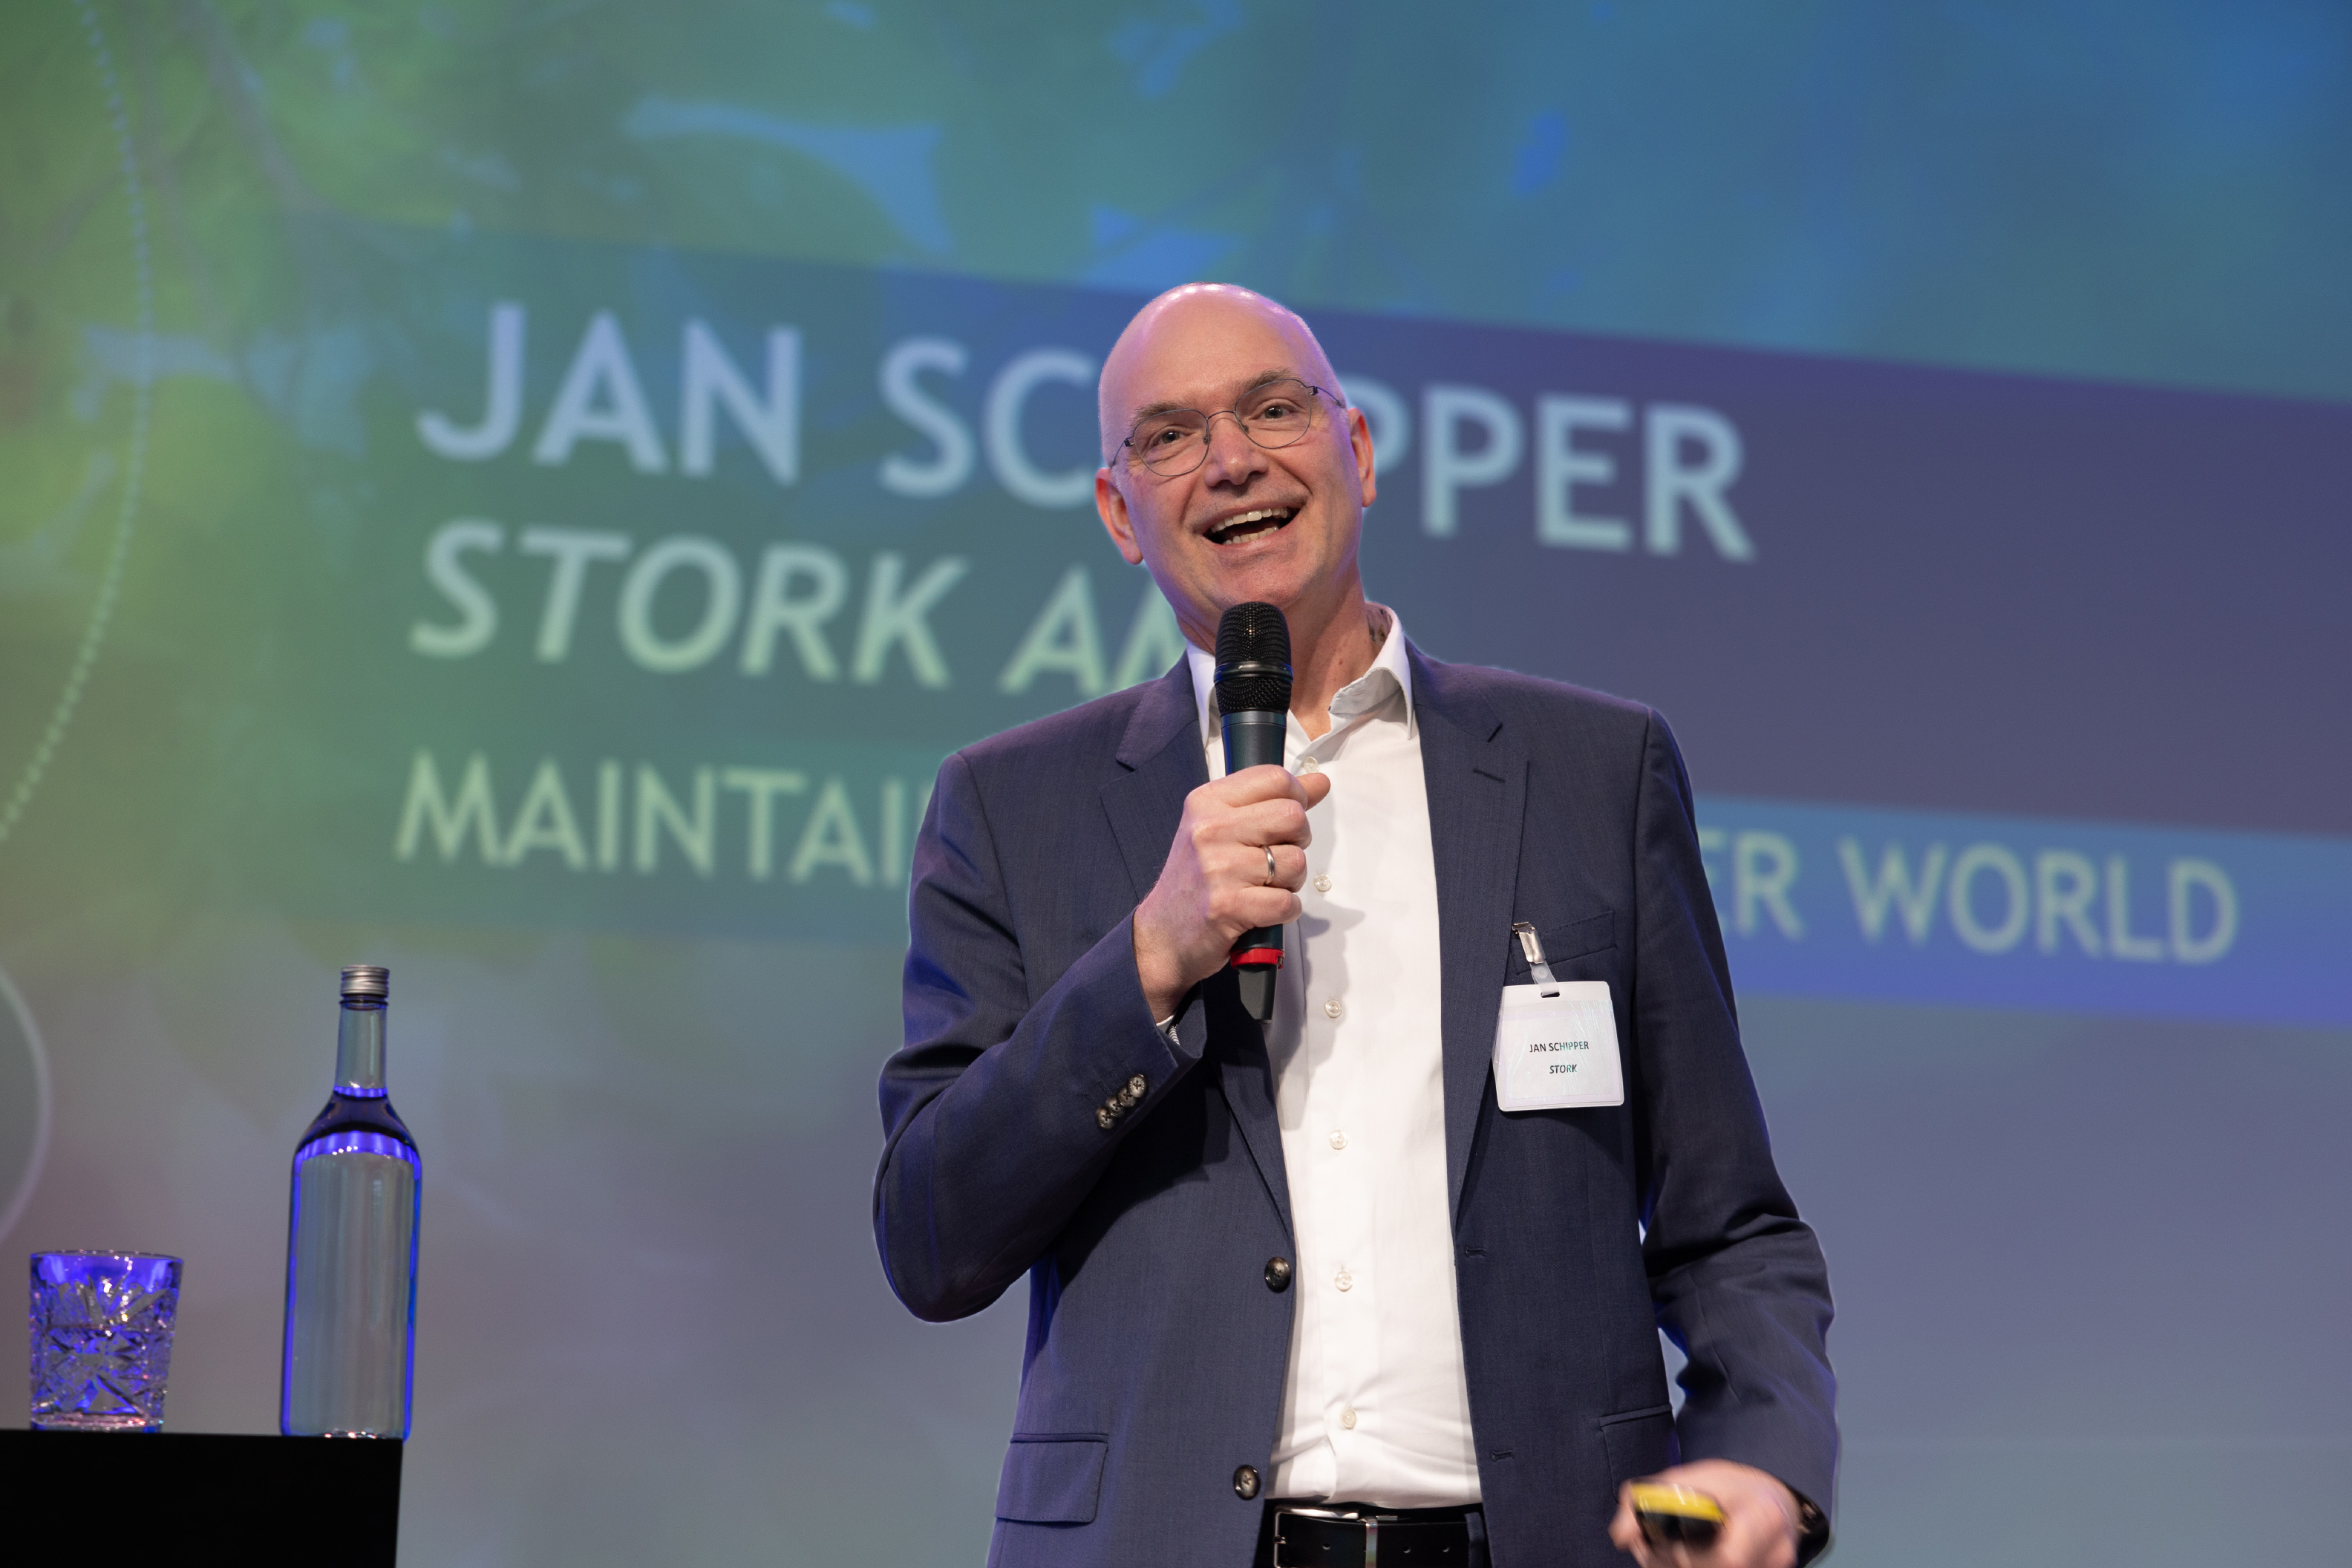 Jan Schipper - Directeur Stork Asset Management Technology aan het woord.